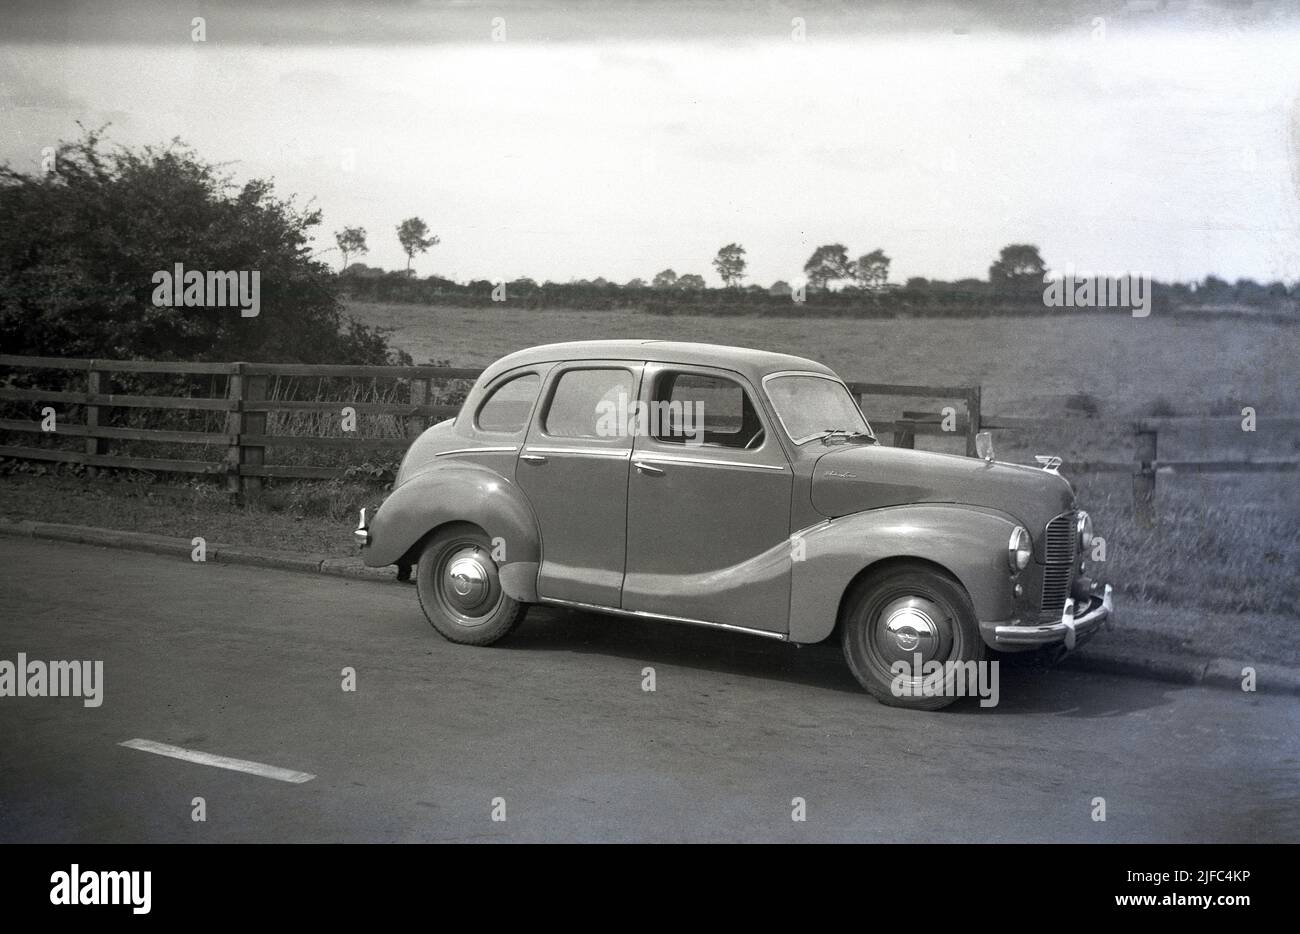 1950s, vue latérale historique d'une voiture Austin de l'époque, une berline Devon A40 garée sur une route de campagne, en Angleterre. Produite entre 1947 et 1952, la voiture a été la première berline d'après-guerre réalisée par la Austin Motor Company. Avec un mélange de technologies anciennes et plus récentes, la voiture a été remarquable pour son style ancien et l'apparence conservatrice. Banque D'Images